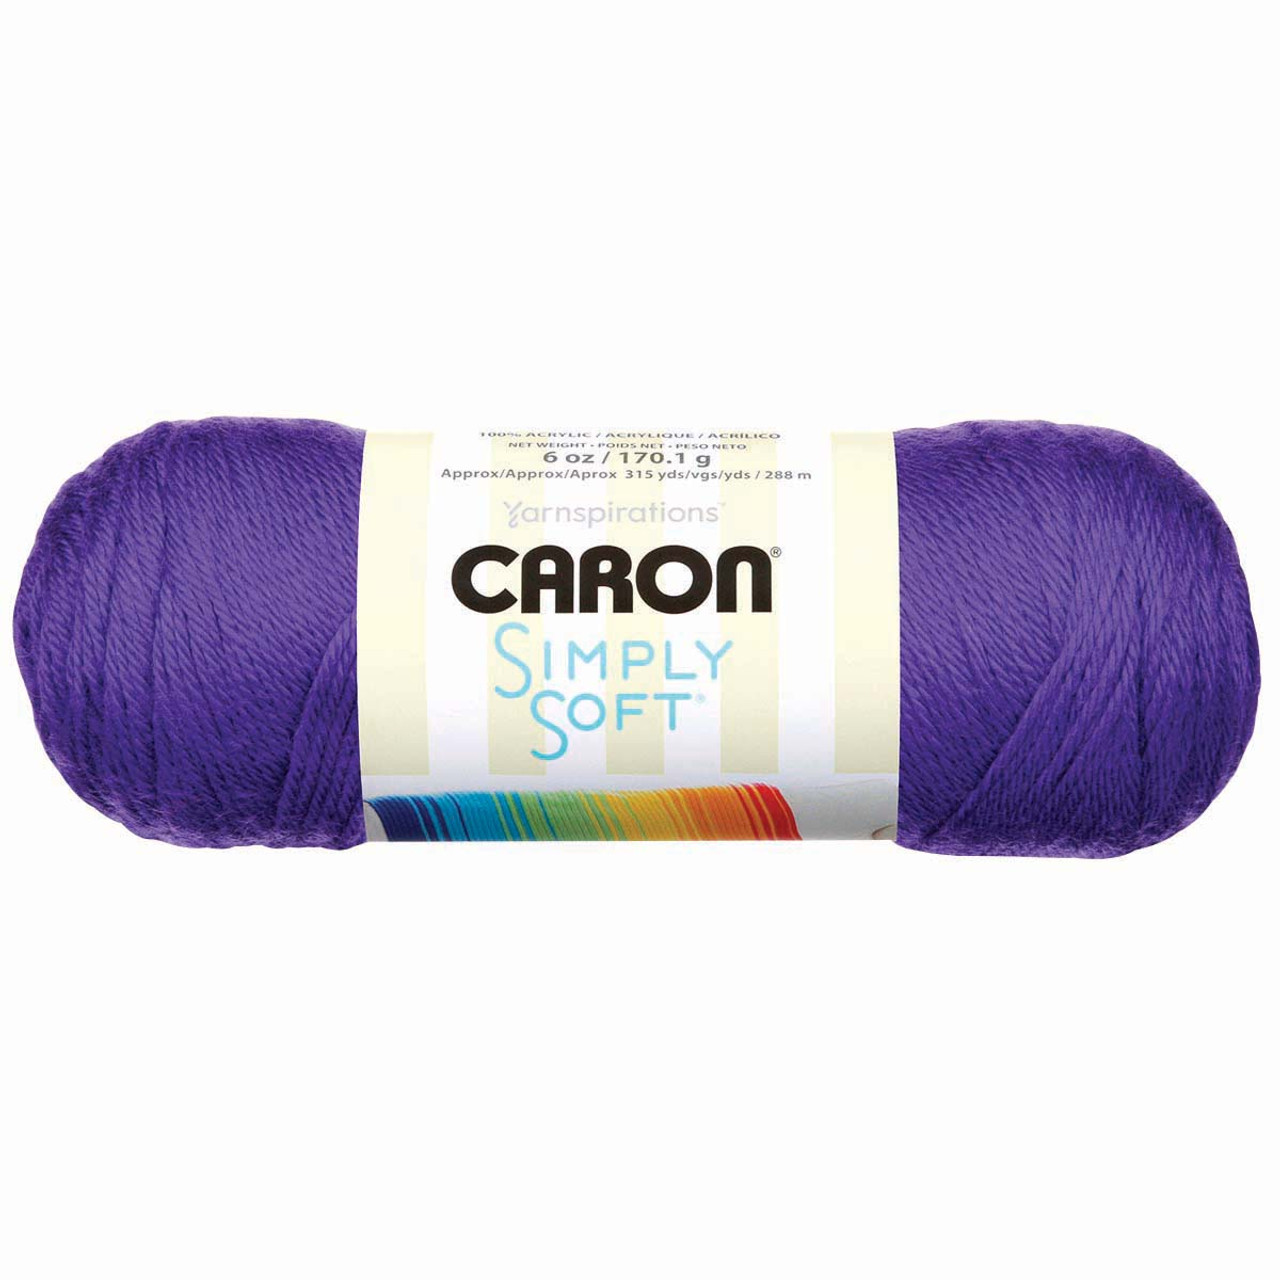 Lion Brand Yarn - 24/7 Cotton - 6 Skein Assortment (Ocean) – Craft